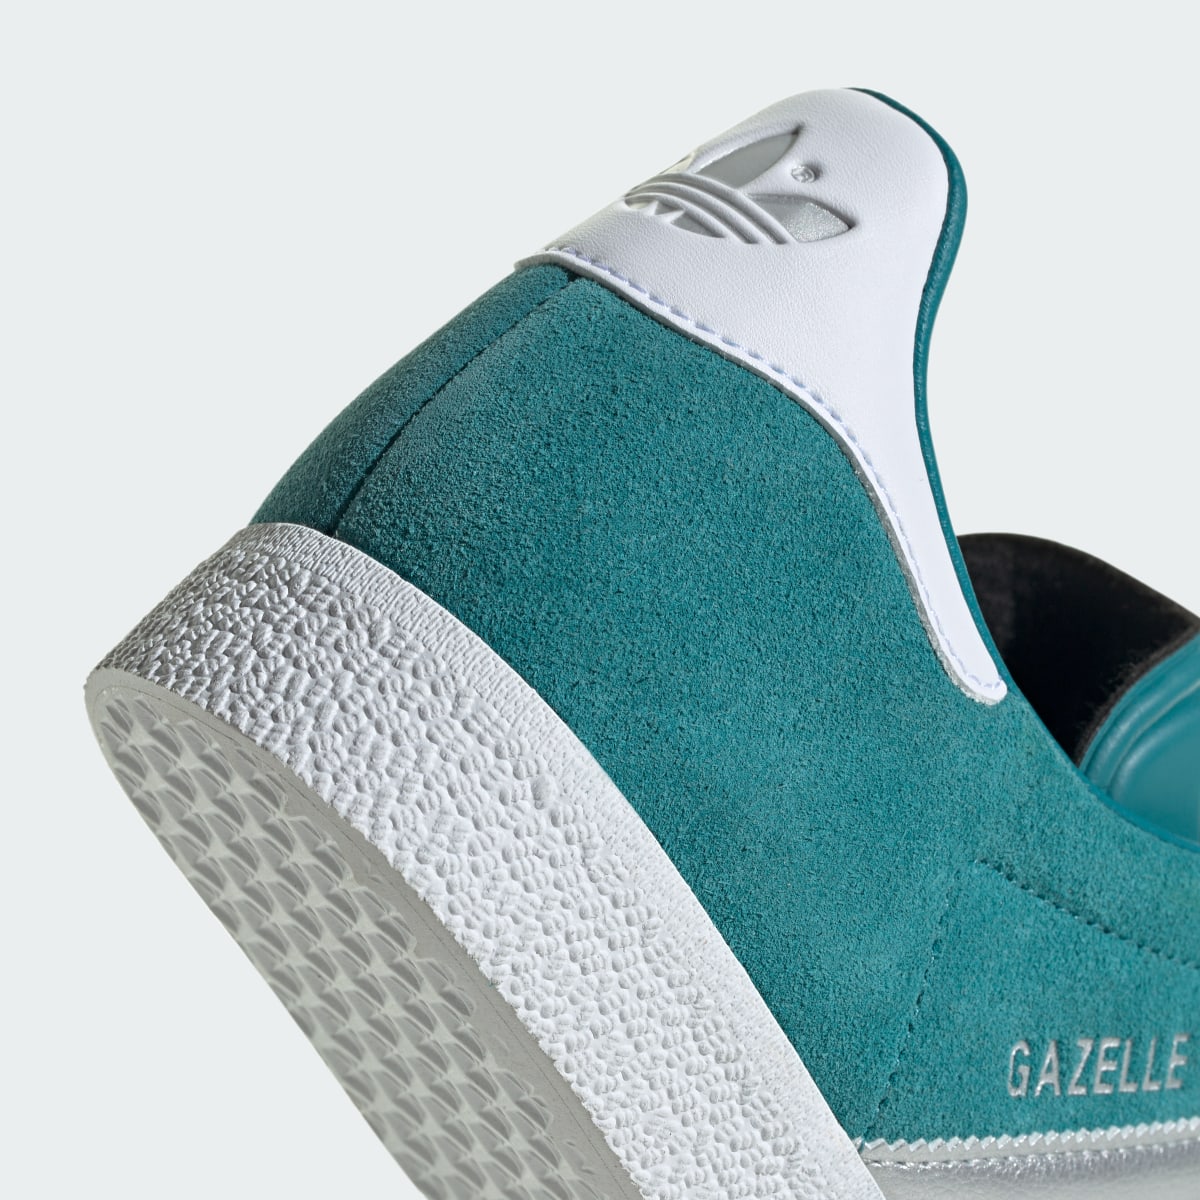 Adidas Gazelle Shoes. 10